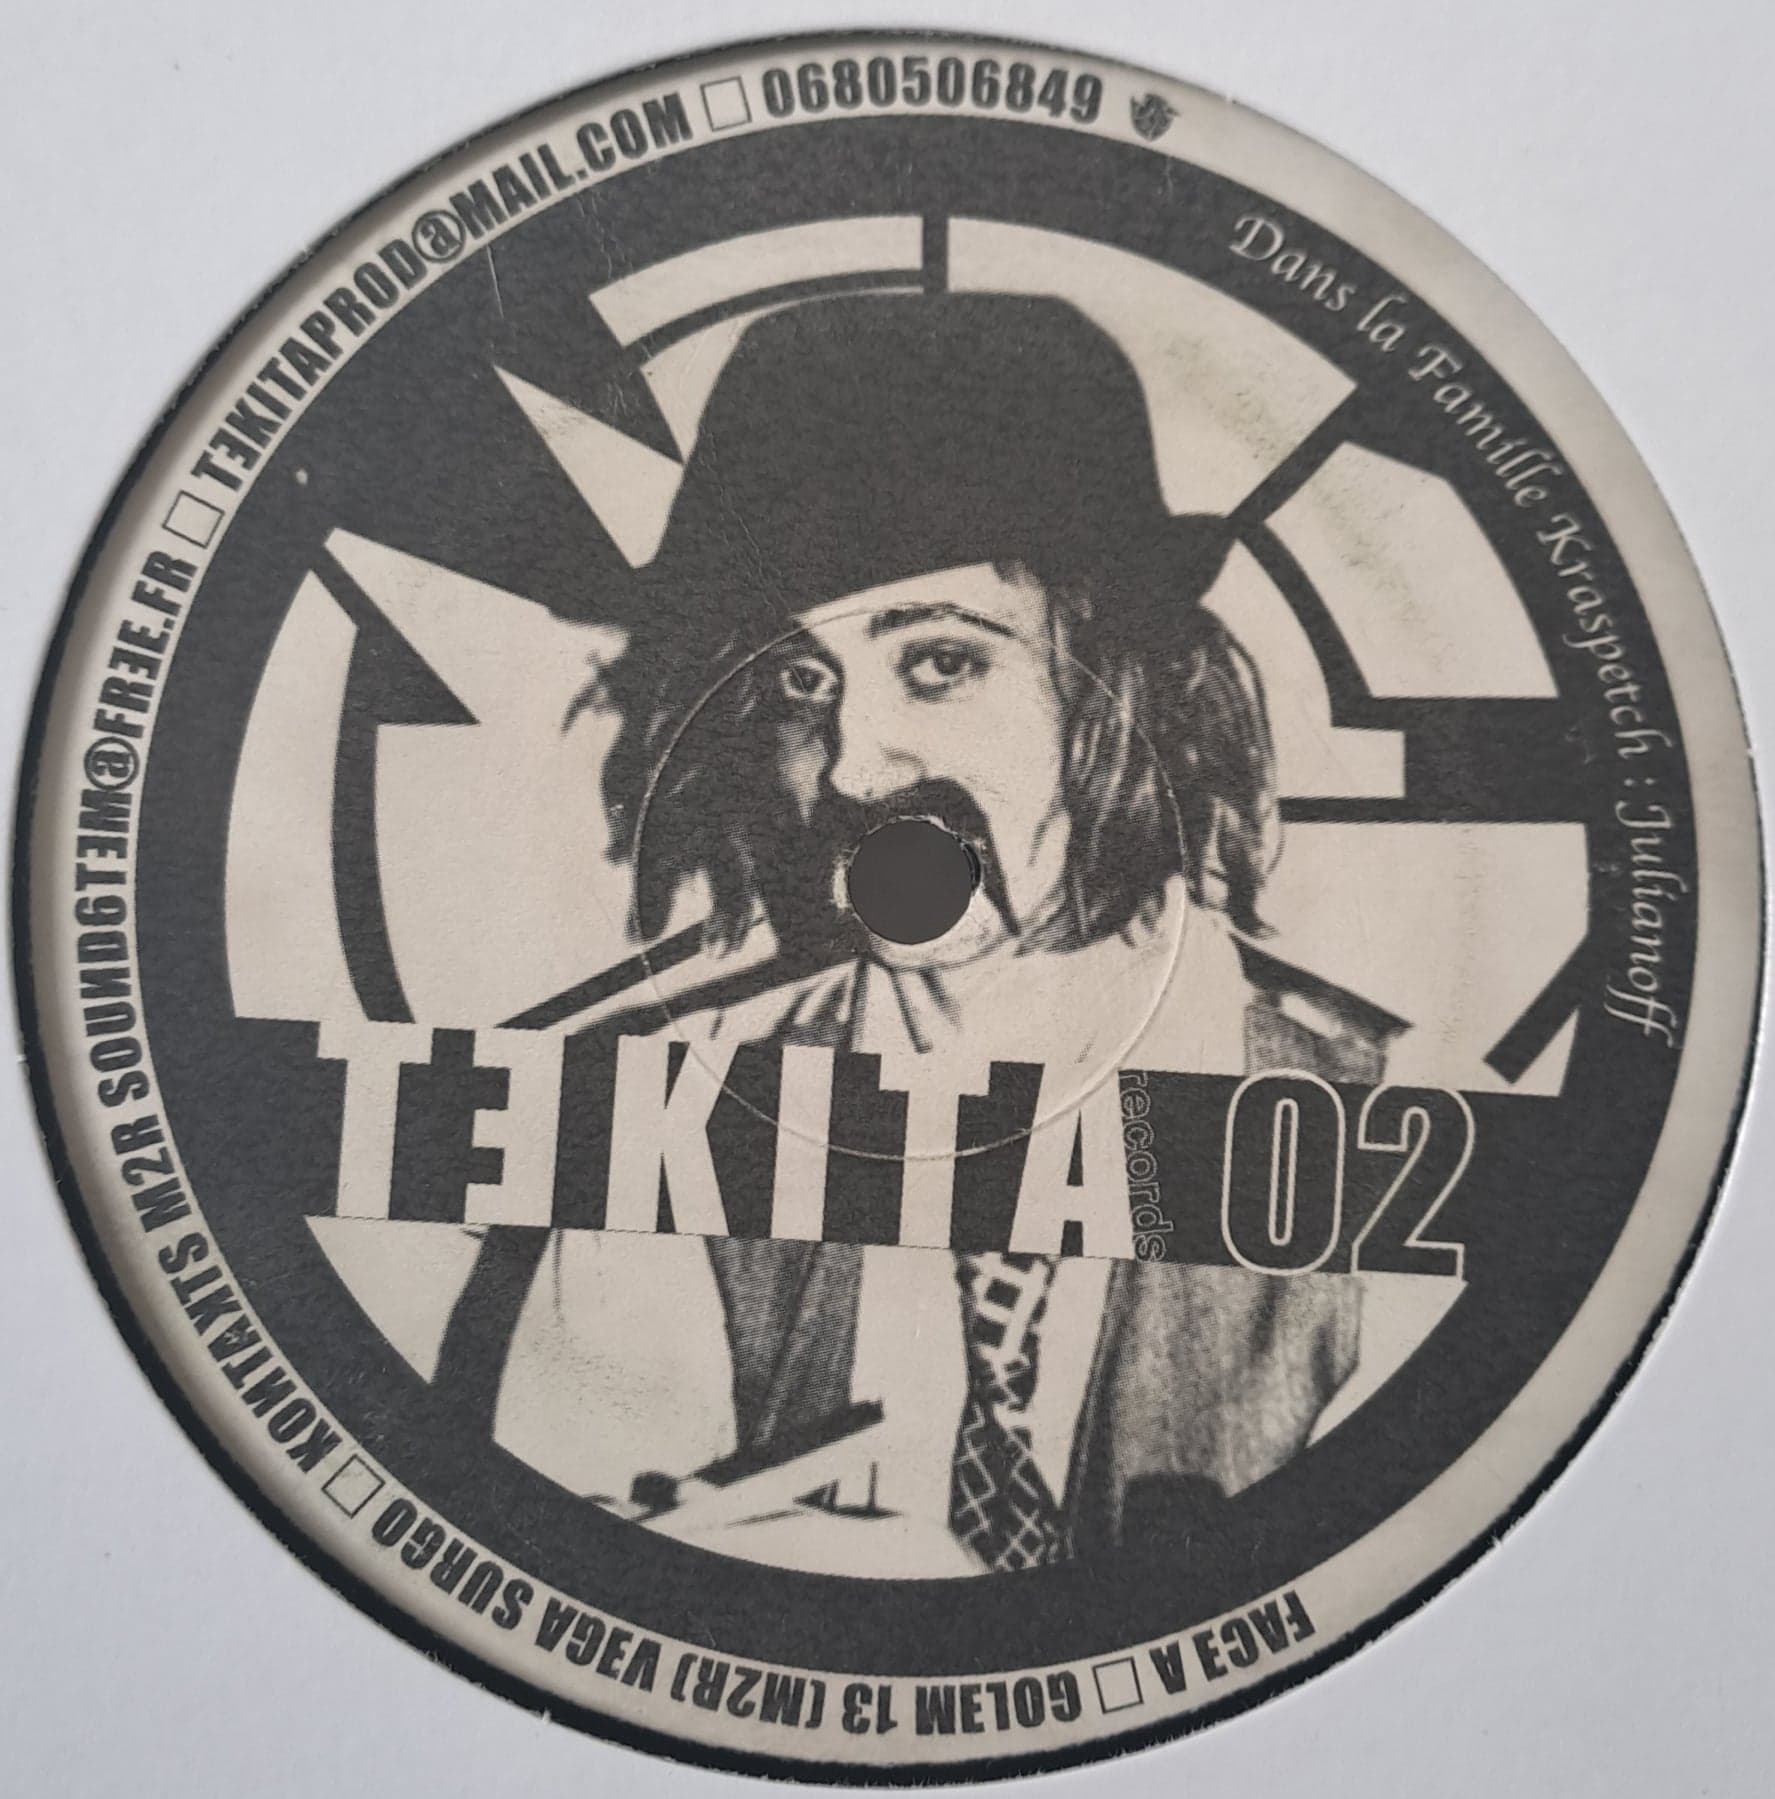 Tekita 02 - vinyle freetekno